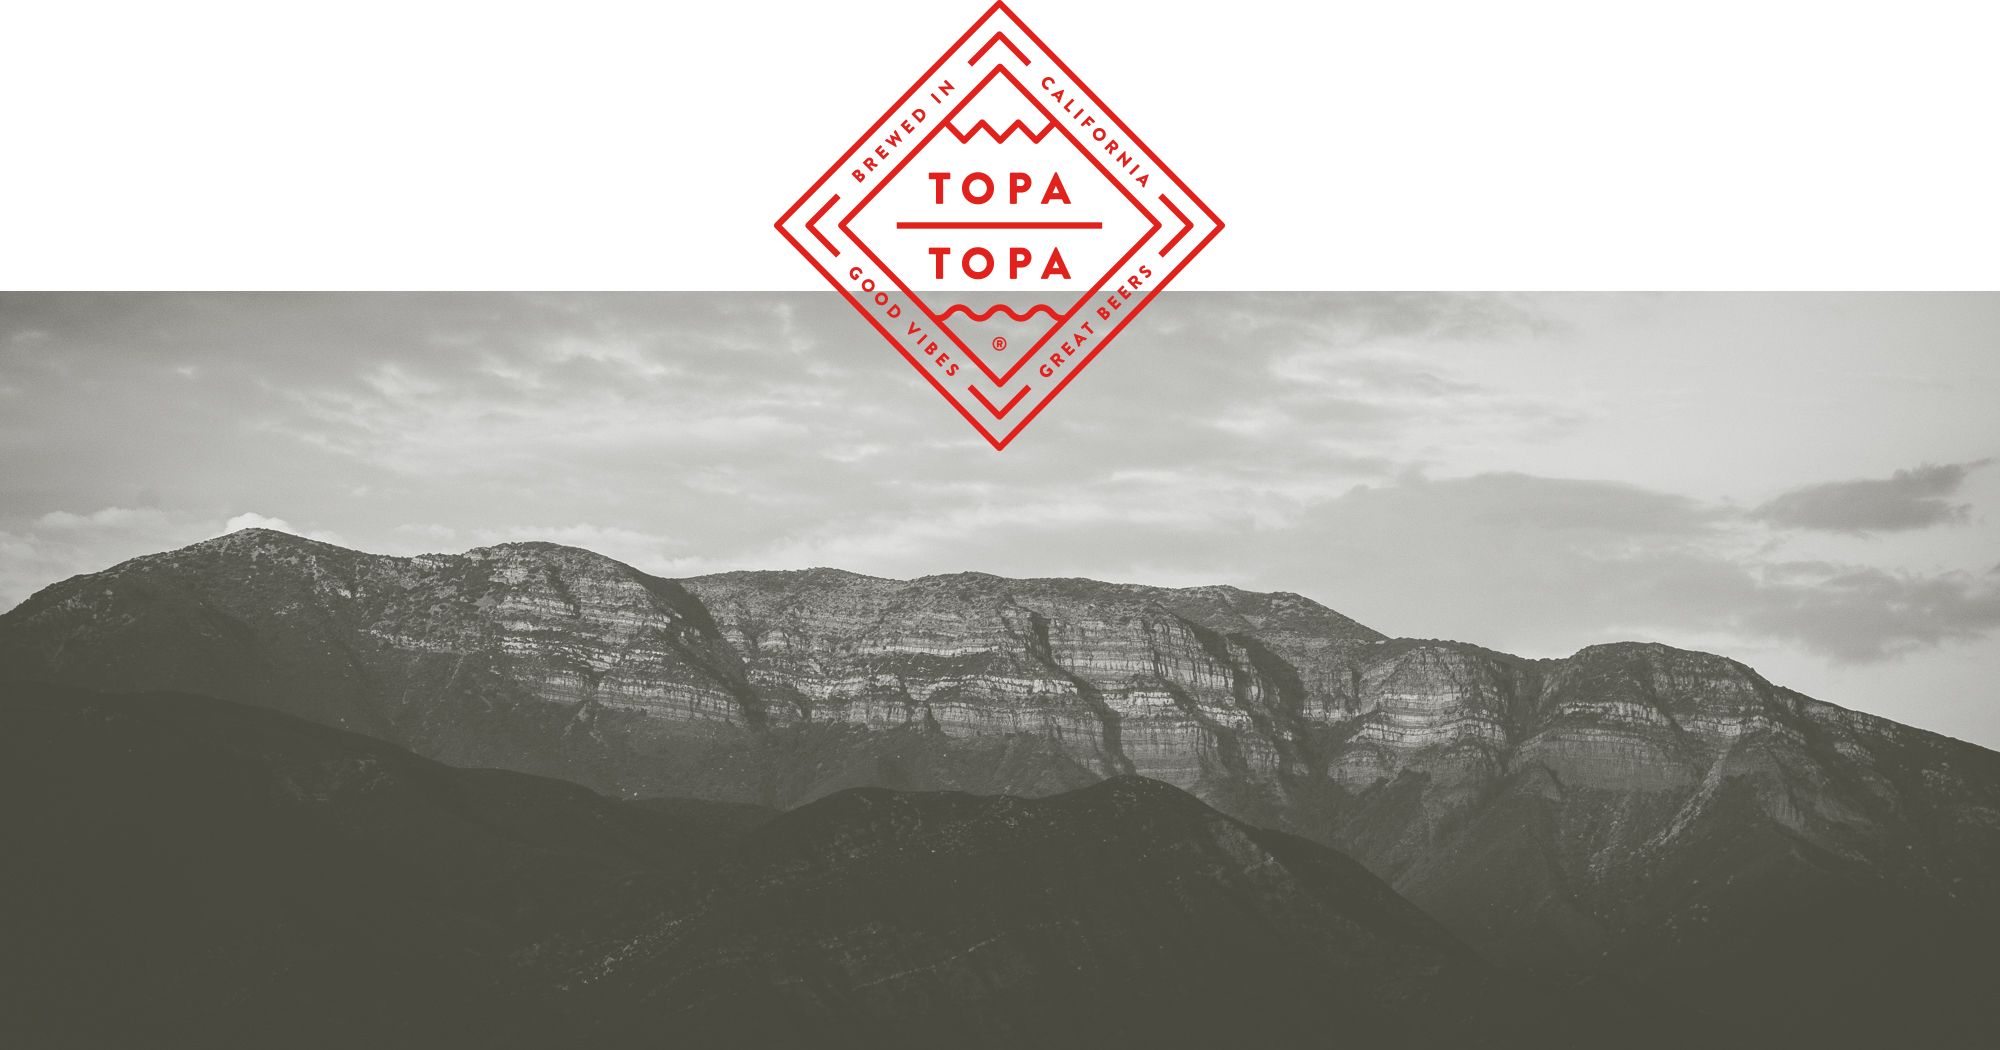 topa topa brewing company